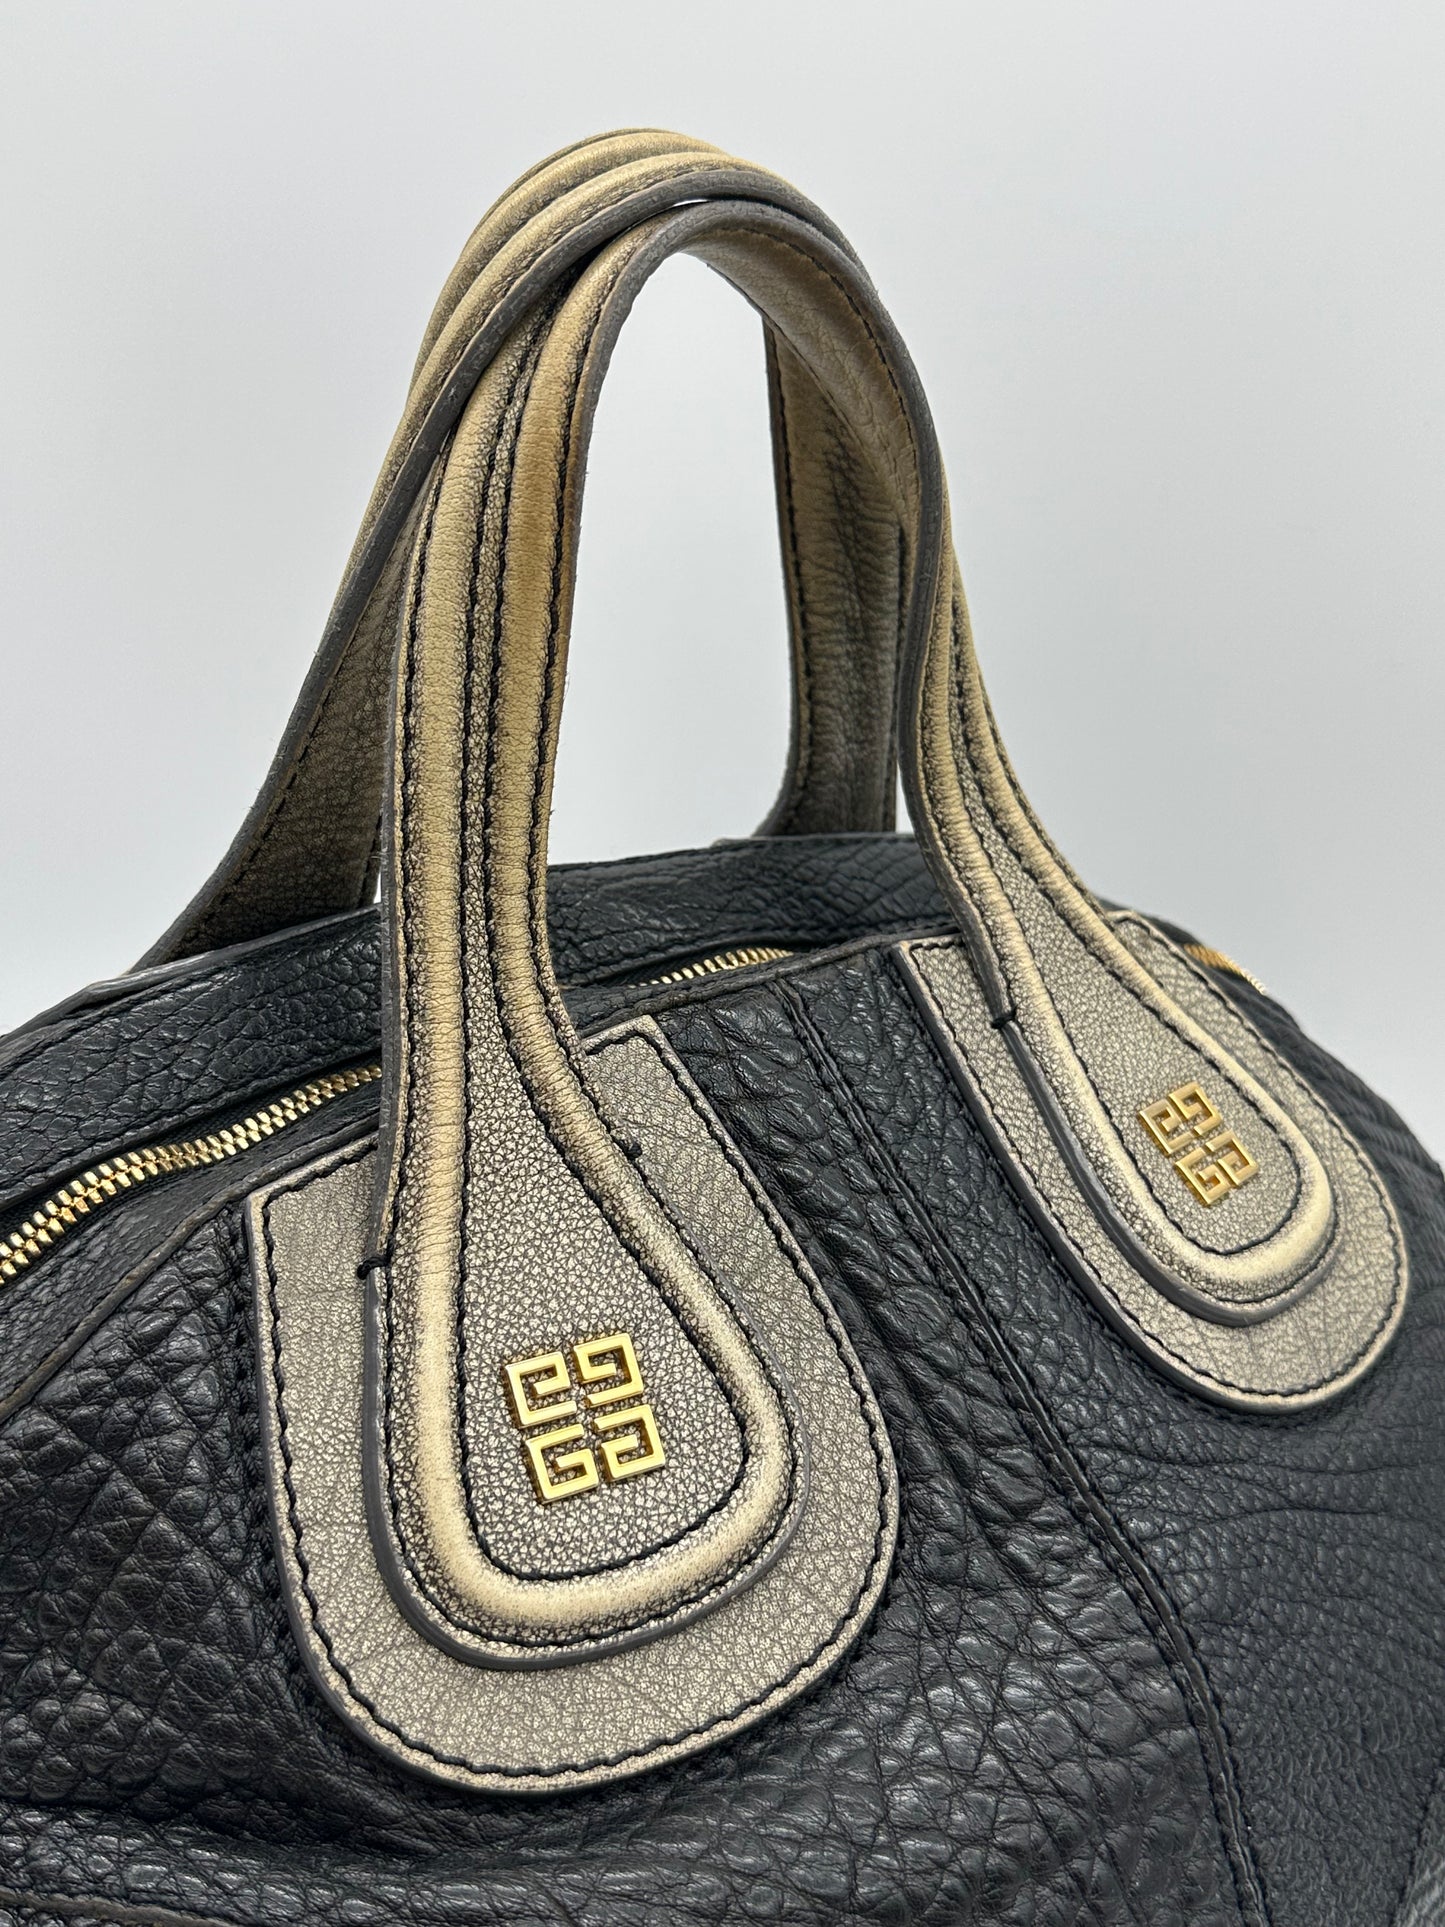 Vintage leather Bag